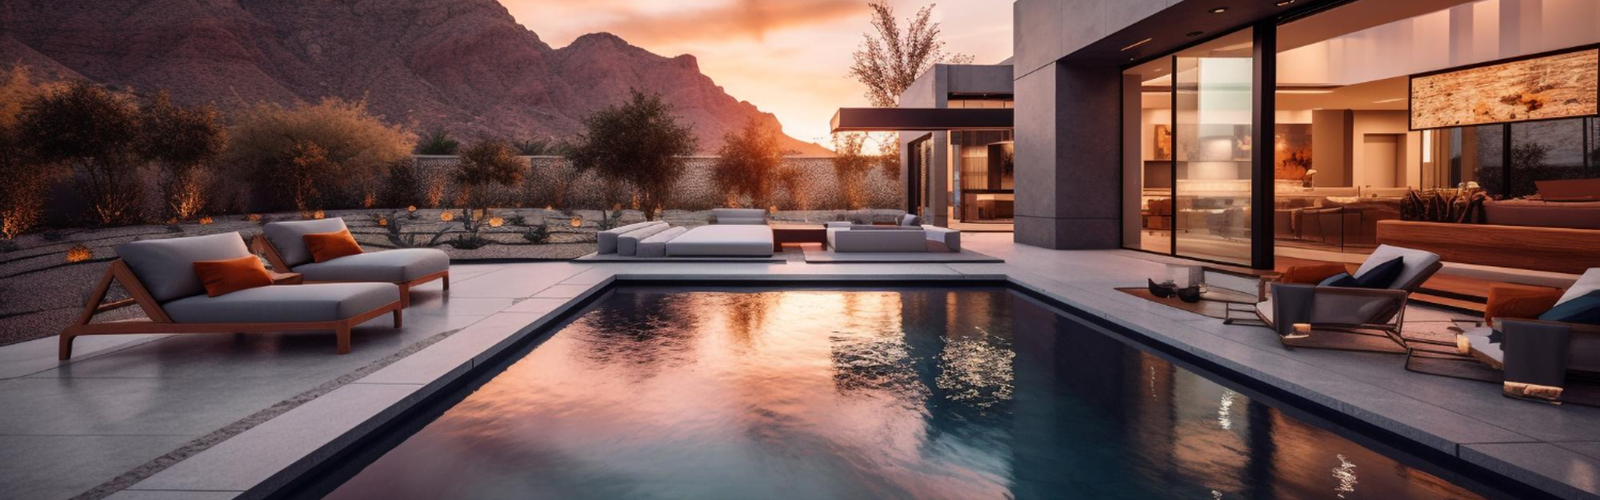 Imagen de cabecera que mostrando una propiedad luxury, sitio web Gonzalo Rodríguez Asesor Inmobiliario